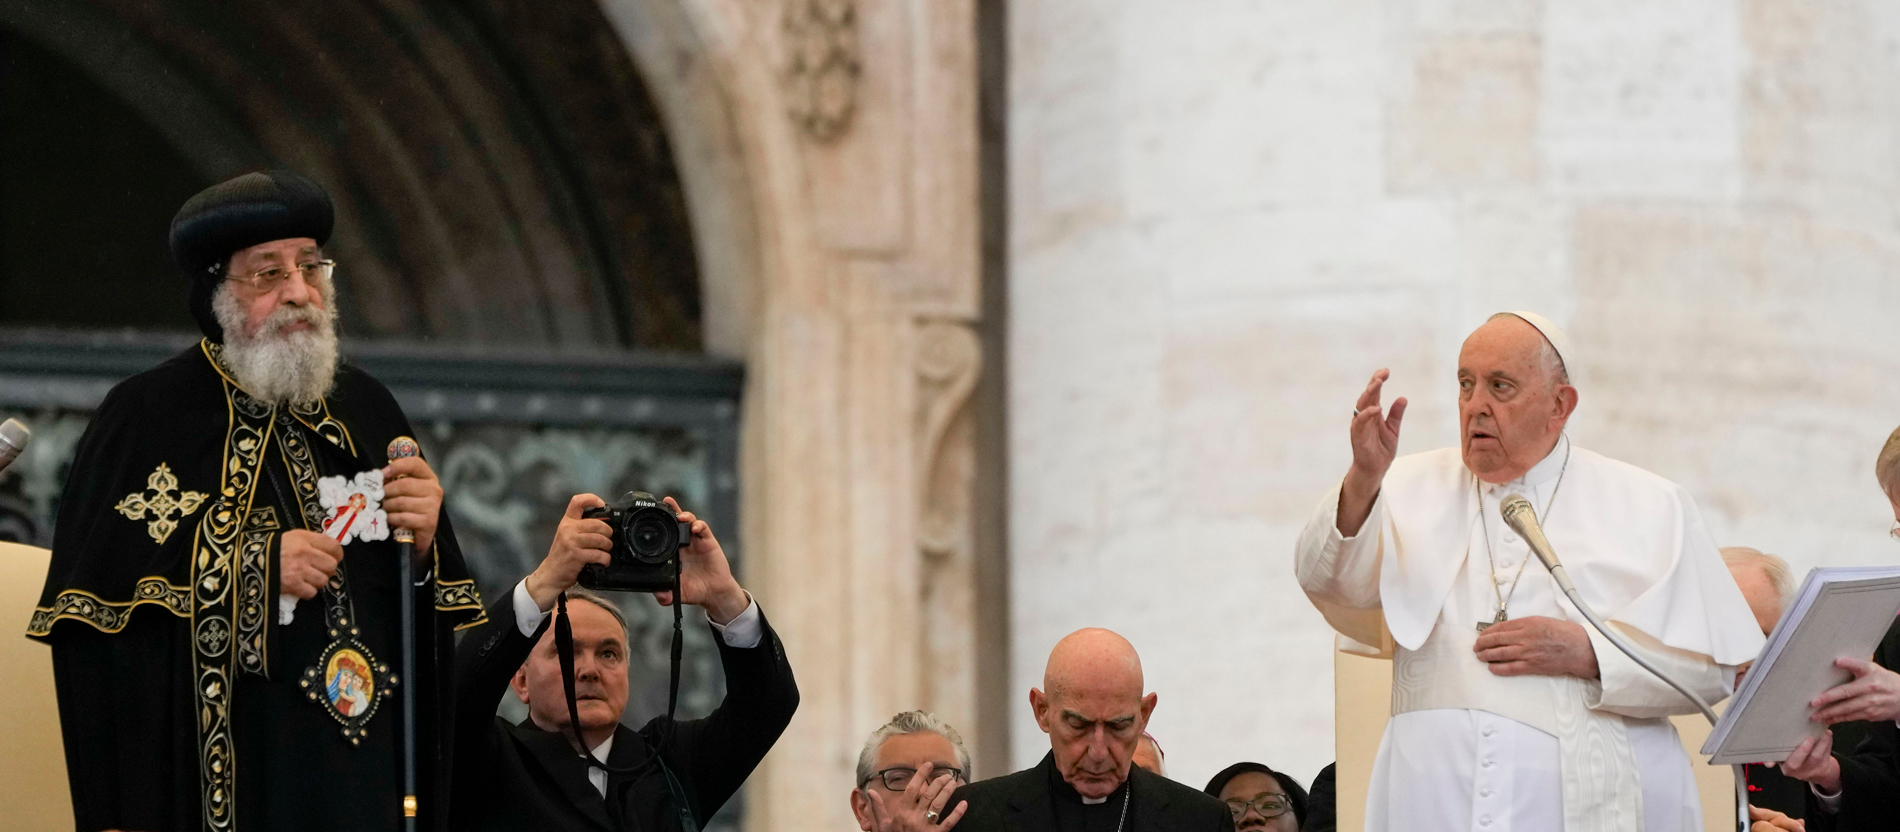 En mayo de 2023, los Papas Tawadros II y Francisco se reunieron en el Vaticano para conmemorar el 50 aniversario del encuentro de sus predecesores. Imagen: © Picture Alliance/Associated Press/Alessandra Tarantino.